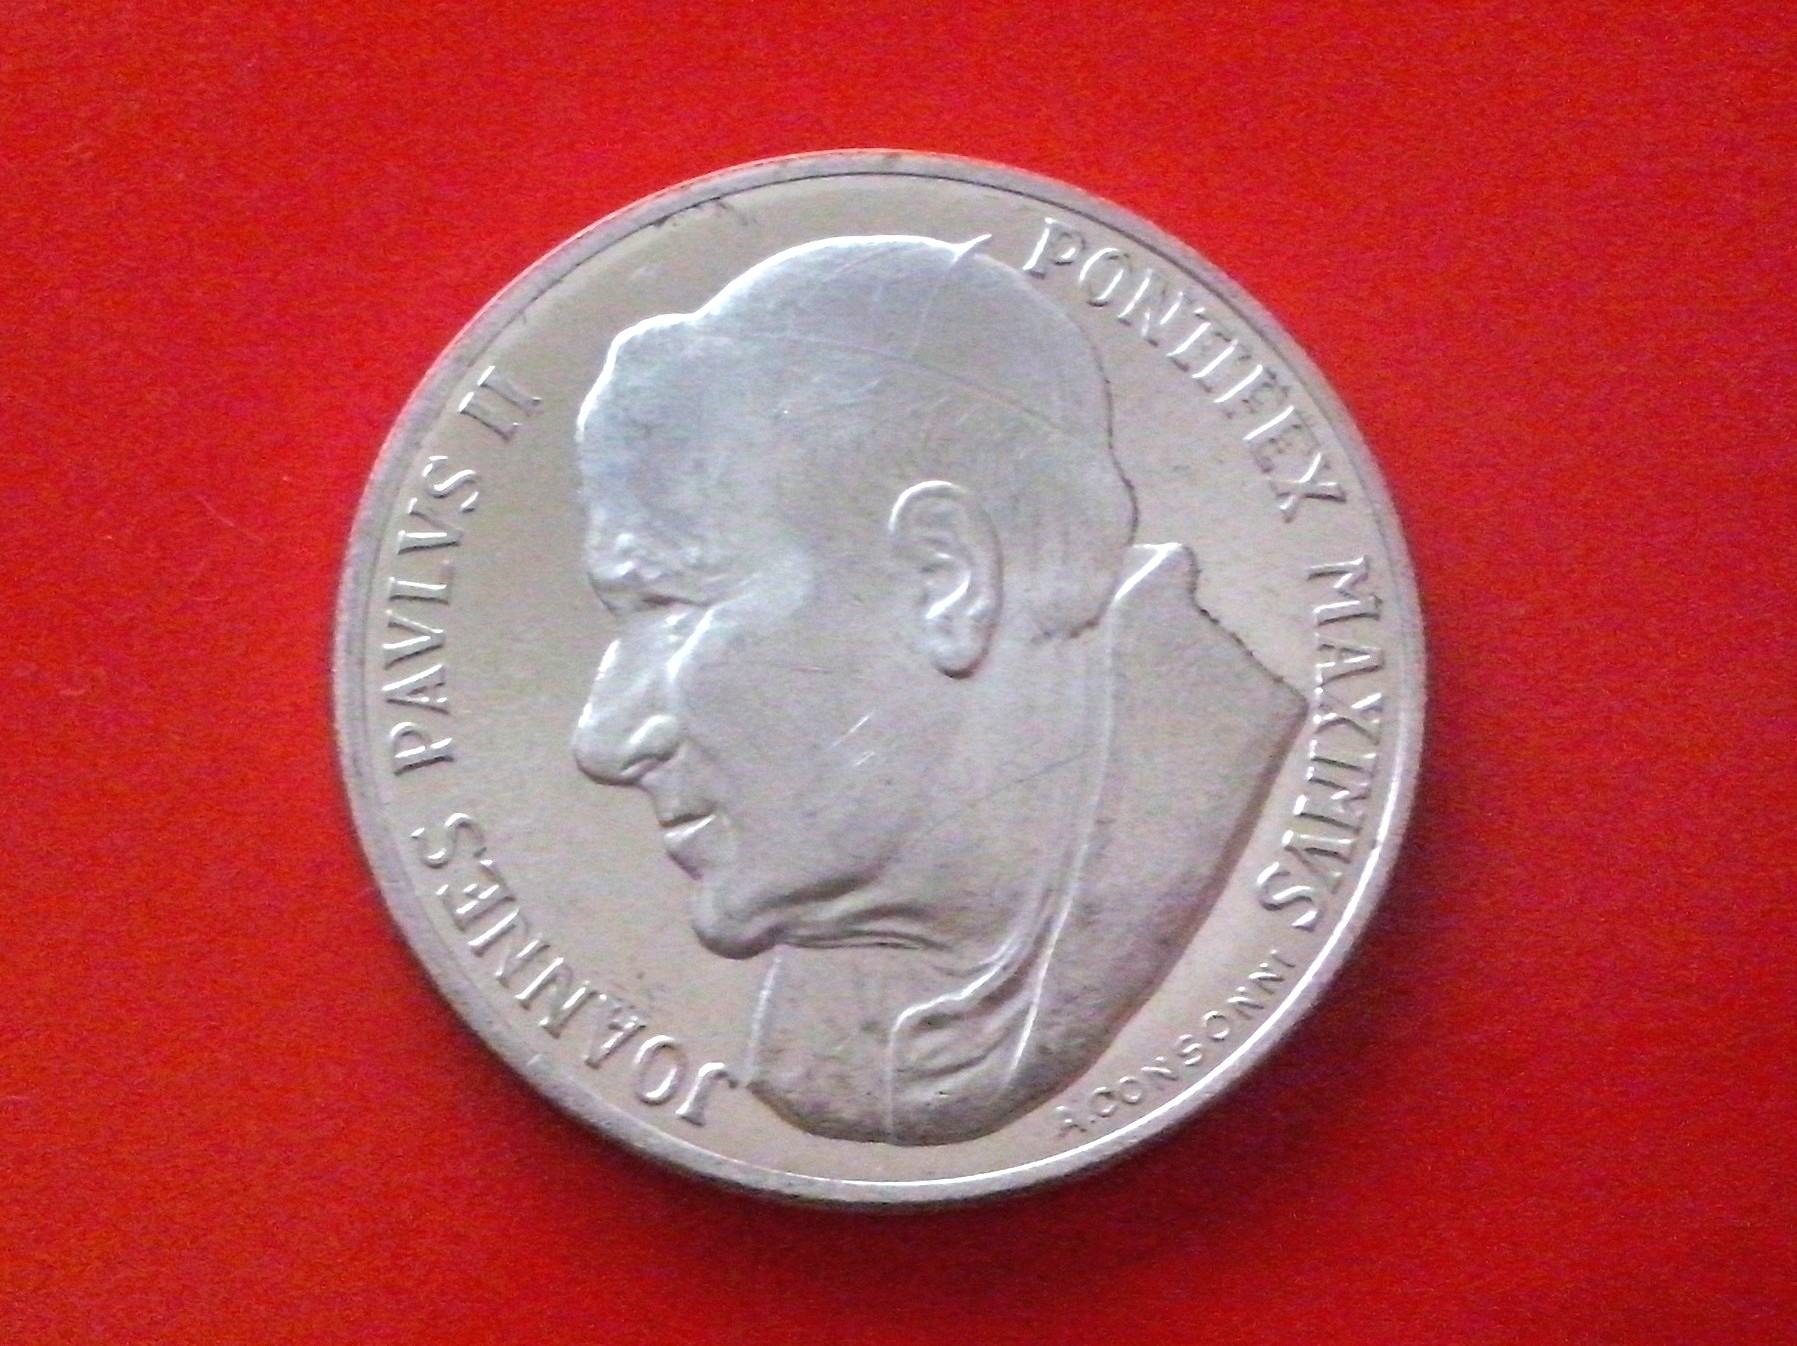 Vendo Moneda de Plata de Juan Pablo ll Original